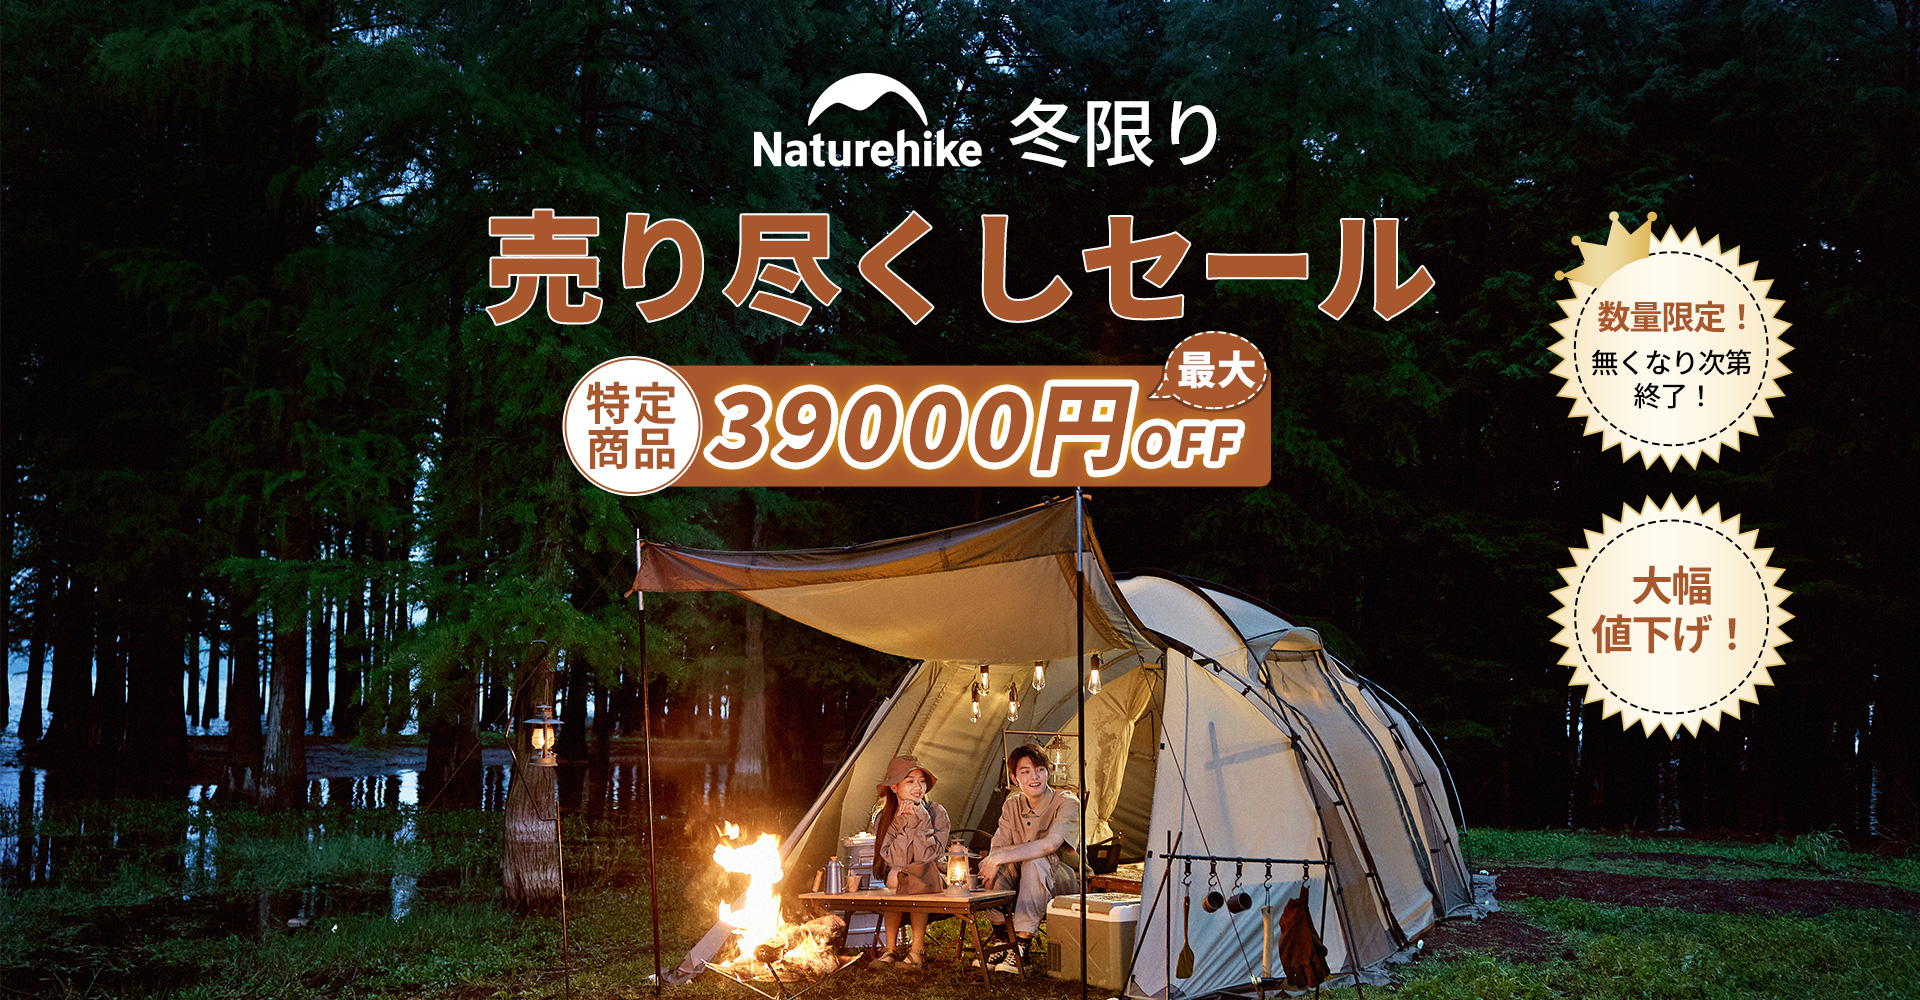 Naturehike Japan 公式サイト – Naturehike JAPAN